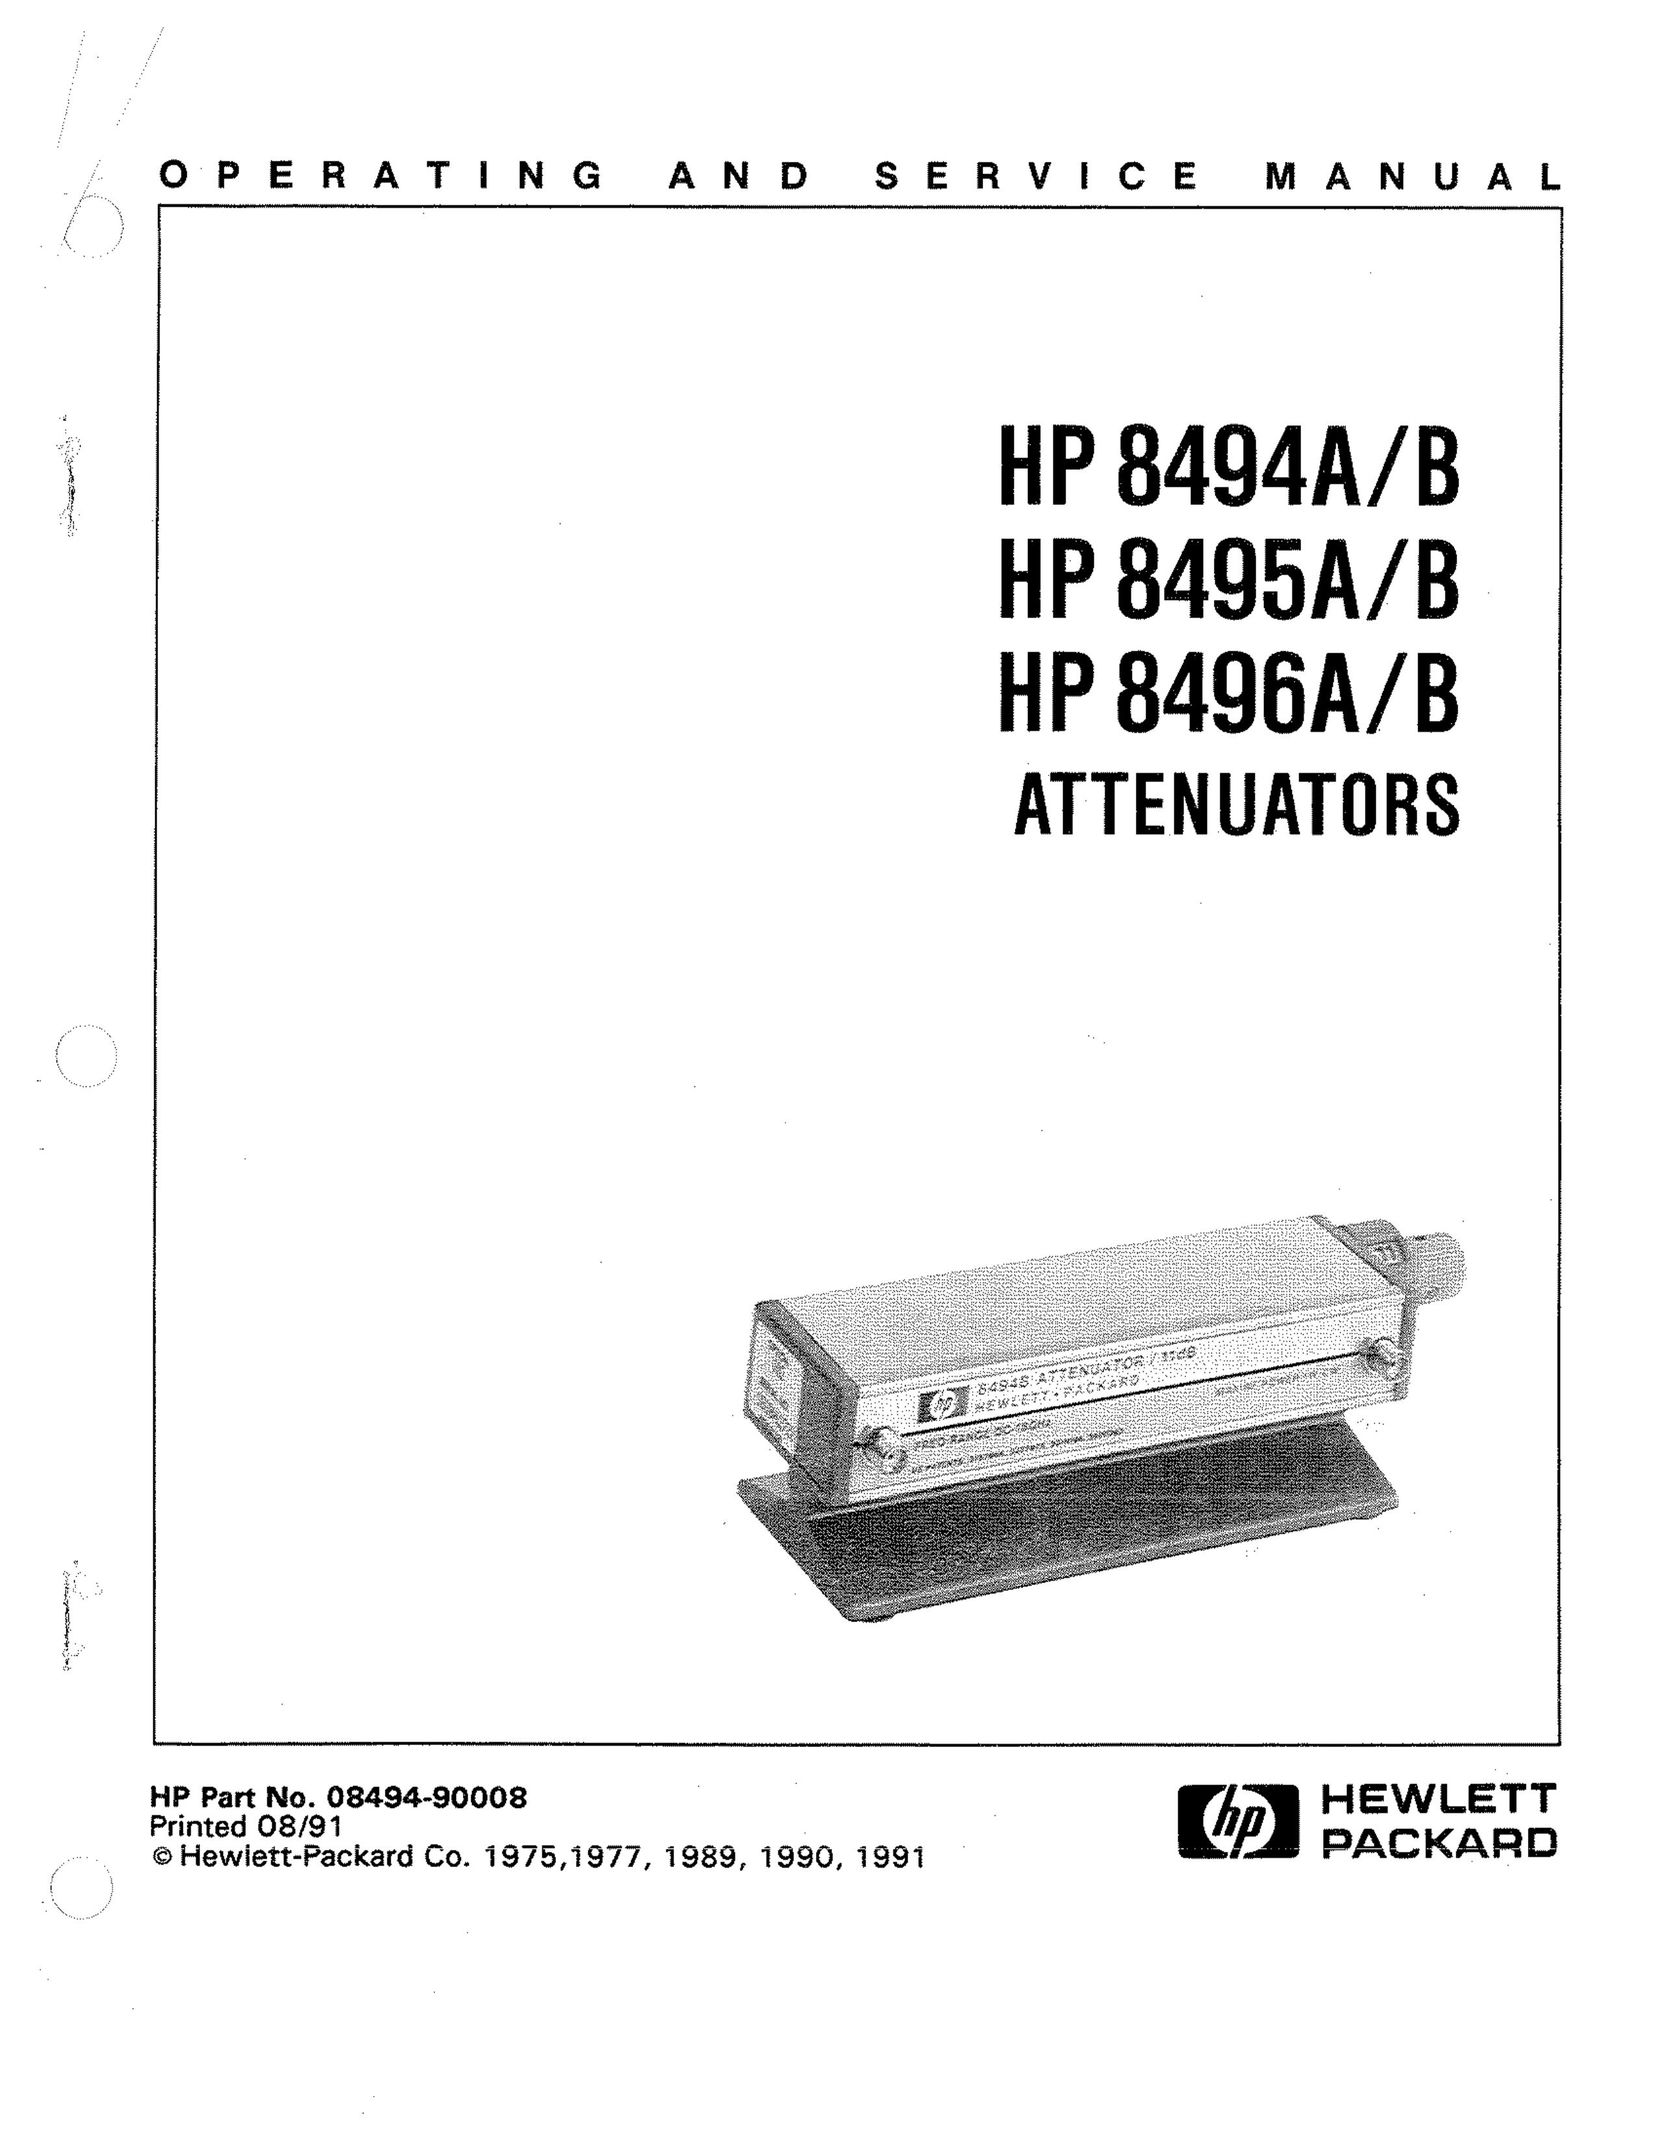 HP (Hewlett-Packard) HP 8495A Work Light User Manual